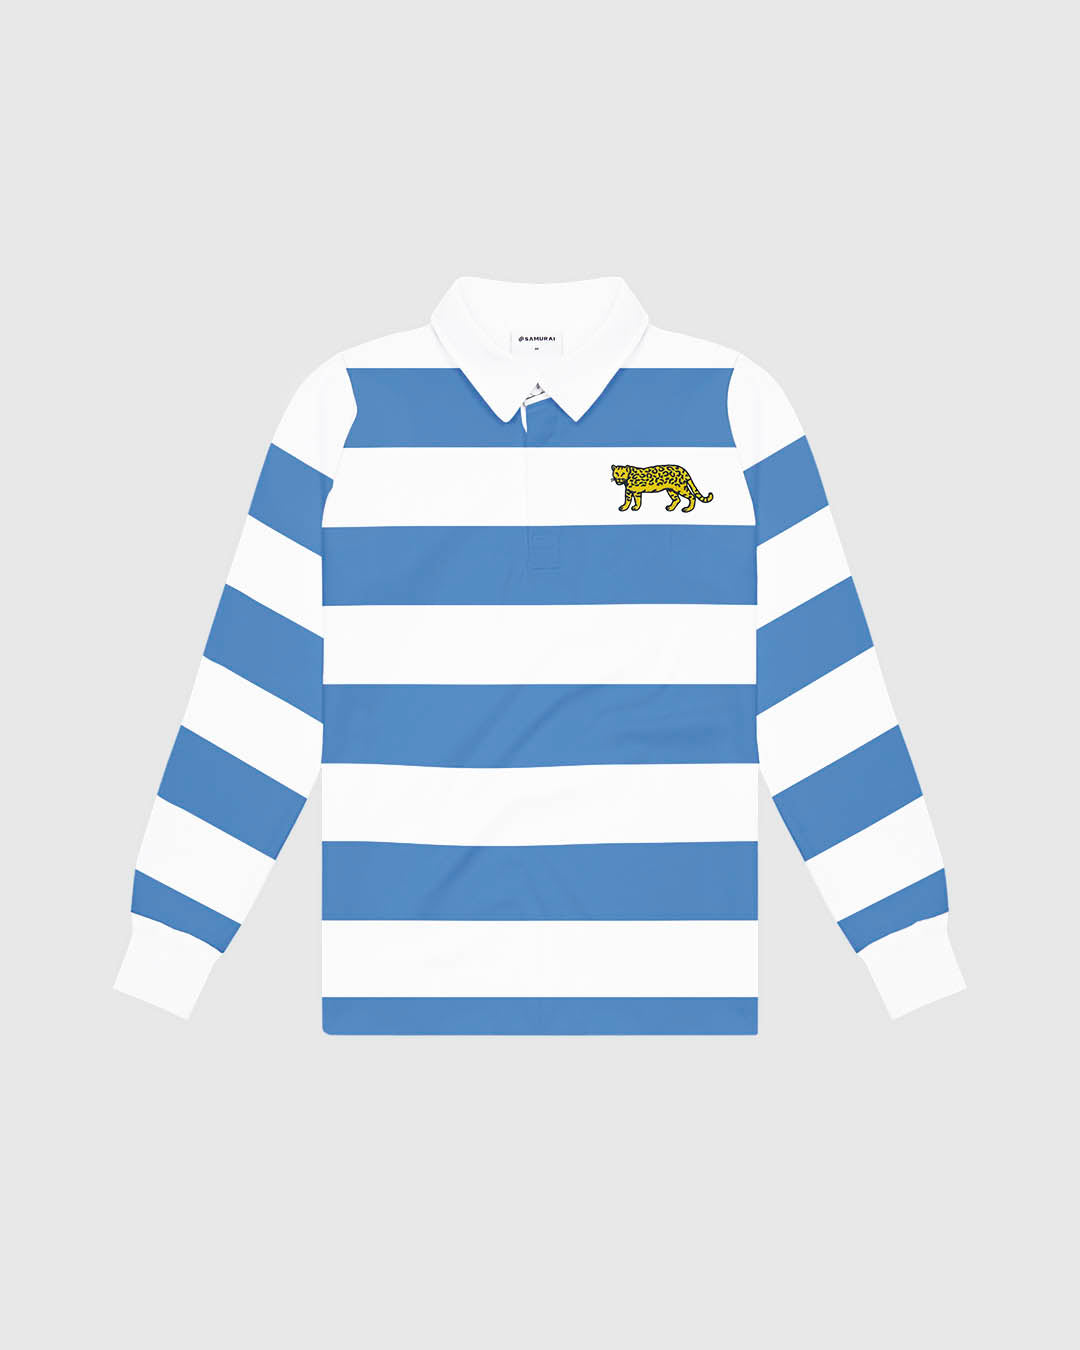 VC: ARG - Vintage Rugby Shirt - Argentina